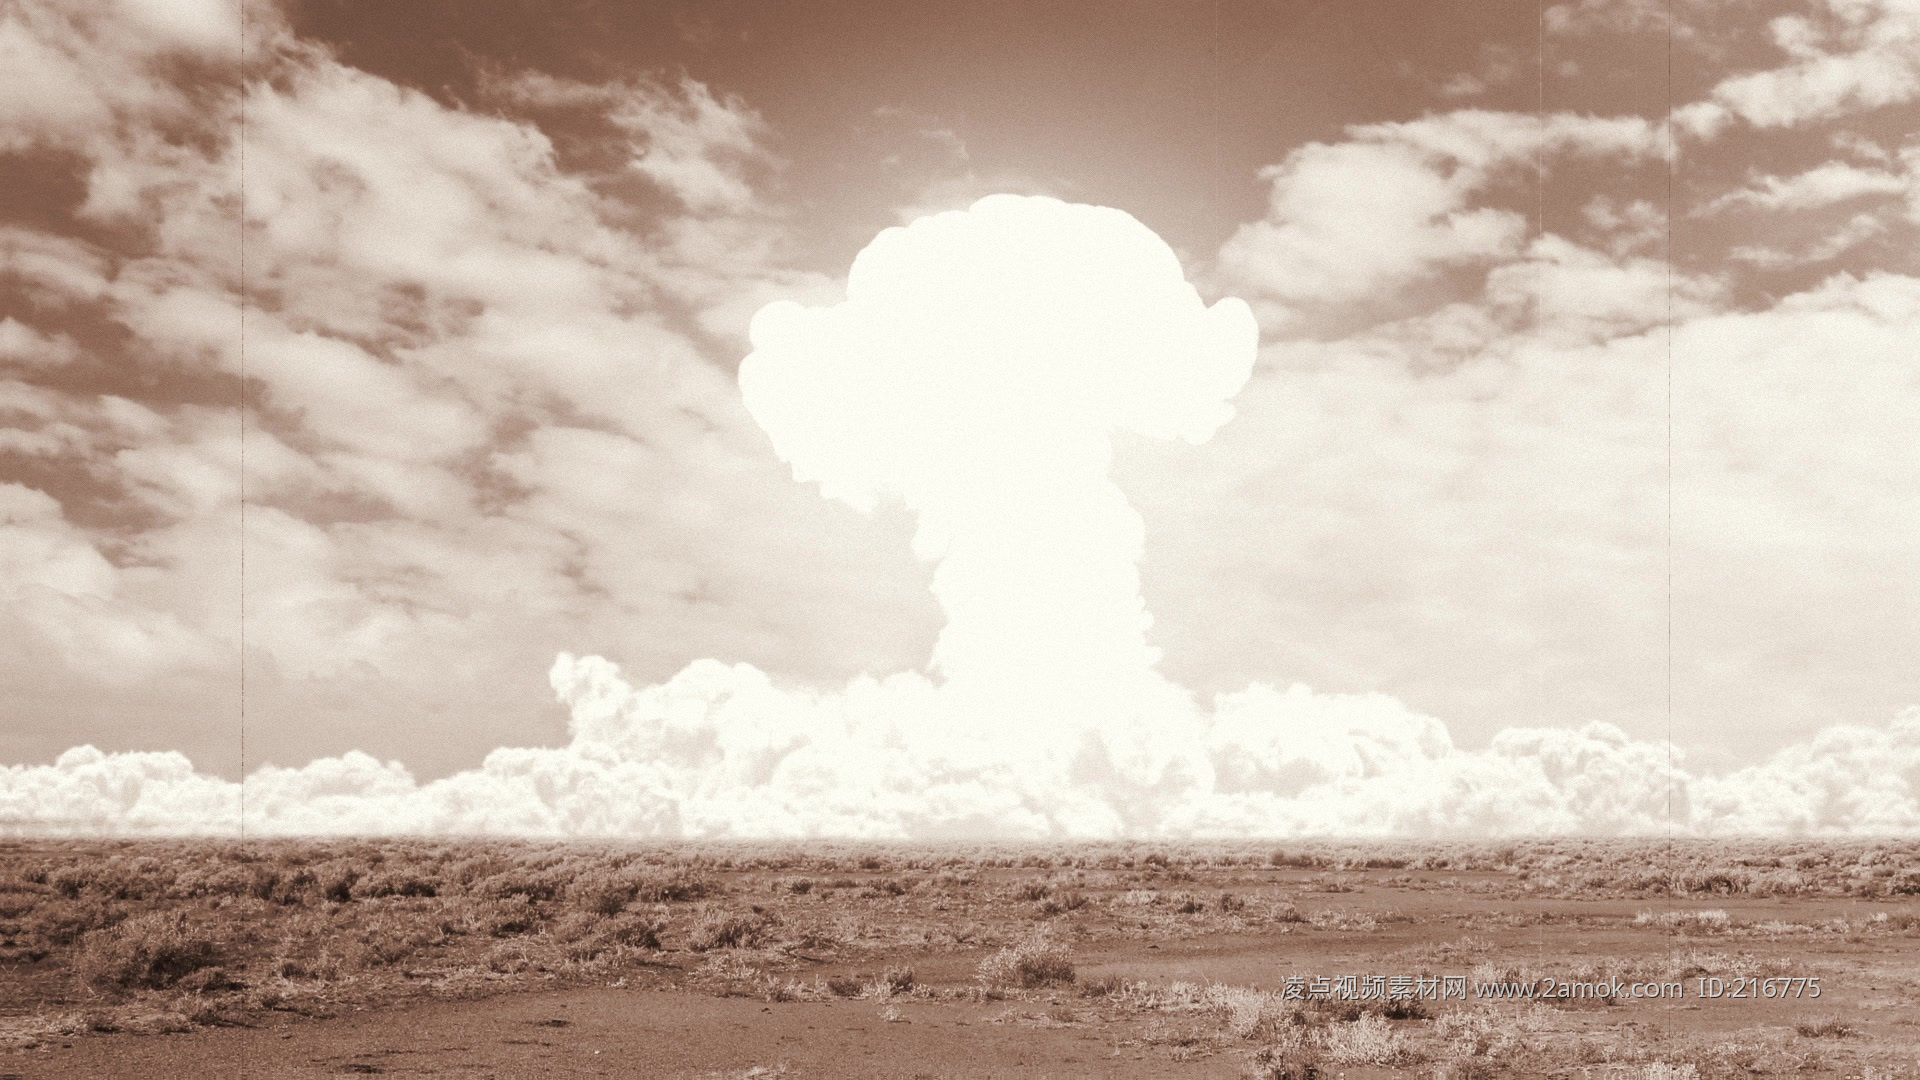 原子弹爆炸蘑菇云视频素材,历史军事视频素材下载,高清1920X1080视频素材下载,凌点视频素材网,编号:96272